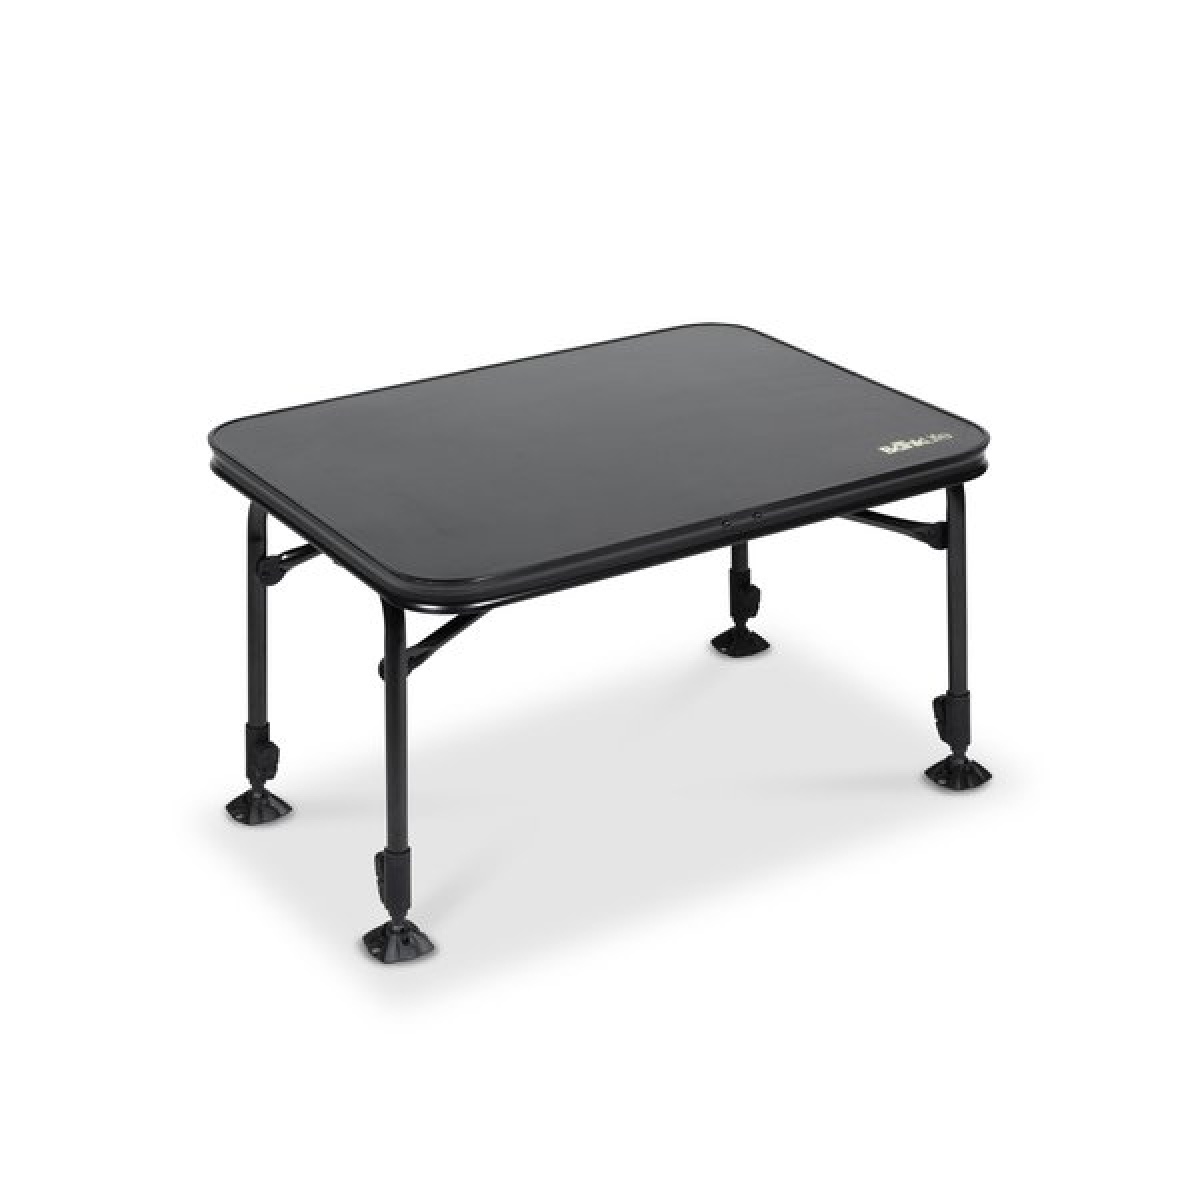 25643-nash-bank-life-adjustable-table-large-rockworld-sklep-dla-karpiarzy